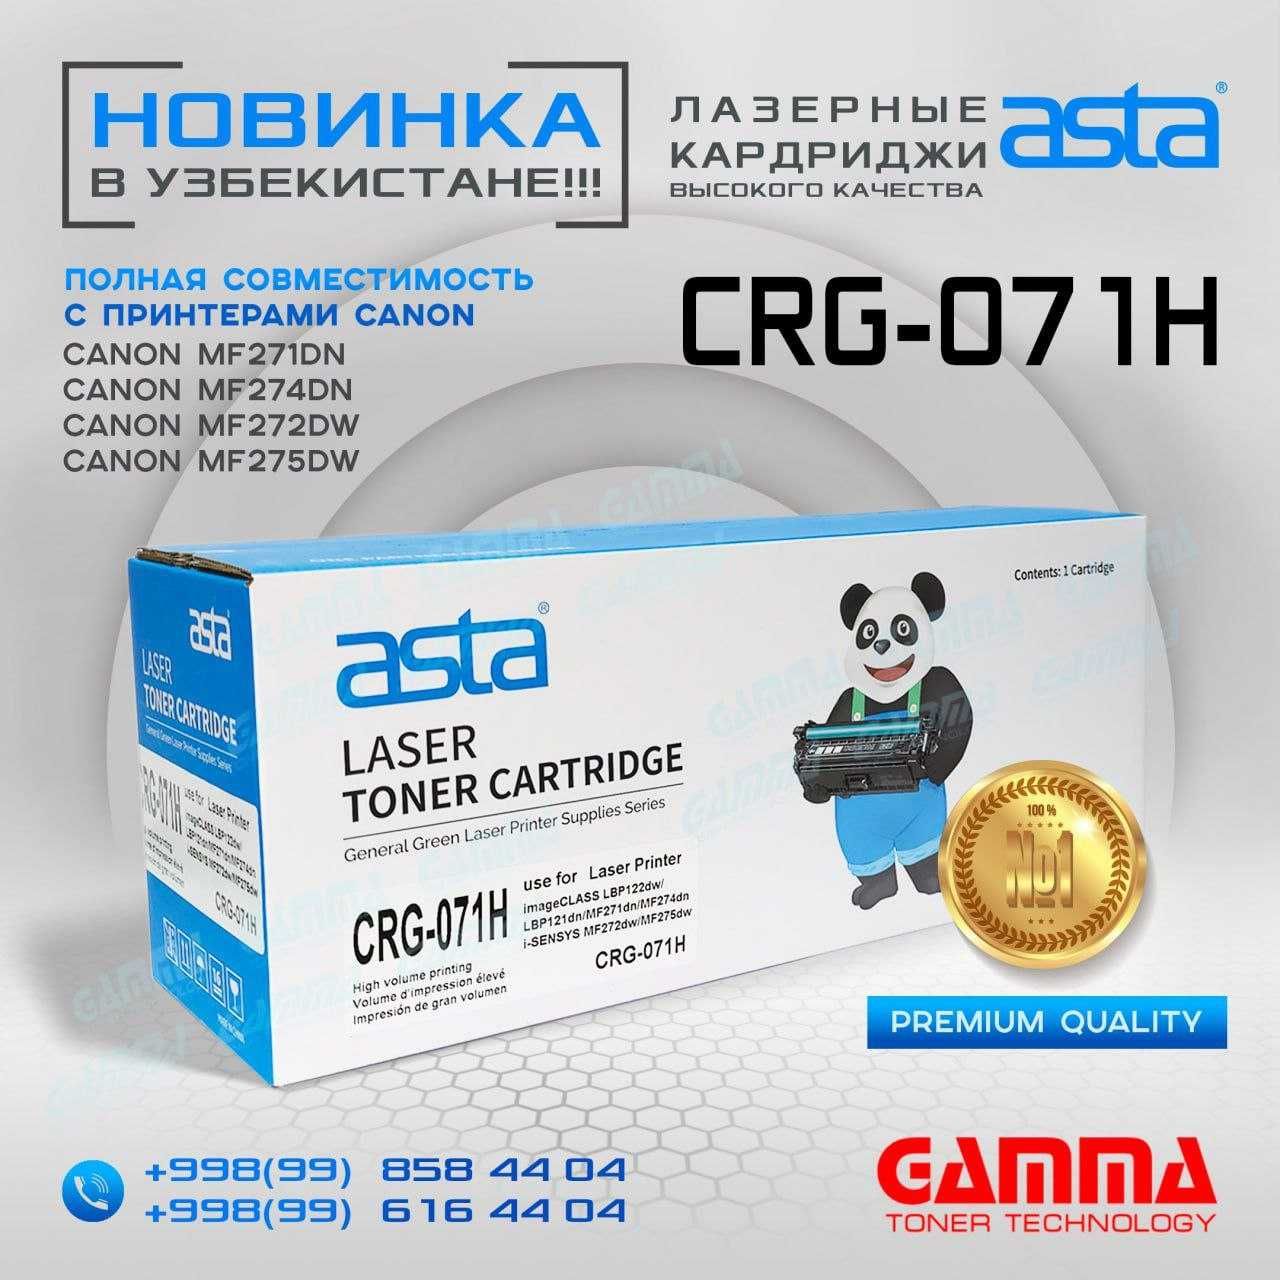 Картриджи "ASTA" Canon CRG-071H Качество по доступной цене!